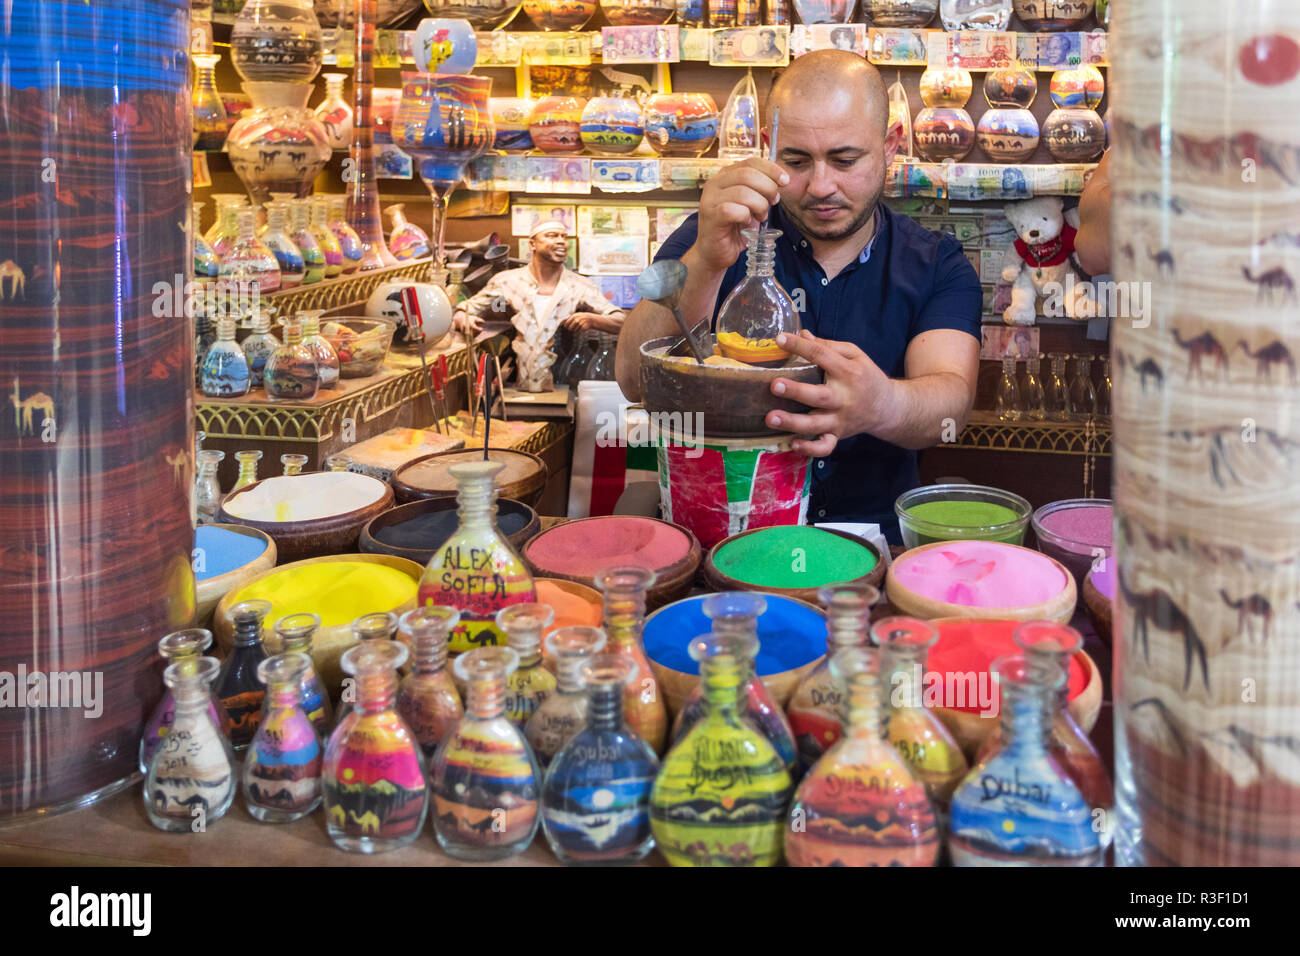 Dubaï, Émirats arabes unis - 12 novembre 2018 : Boutique de souvenirs à l'Atlantis Hôtel avec artisan faisant de souvenirs des bouteilles remplies de sable de couleur en forme de chameau Banque D'Images